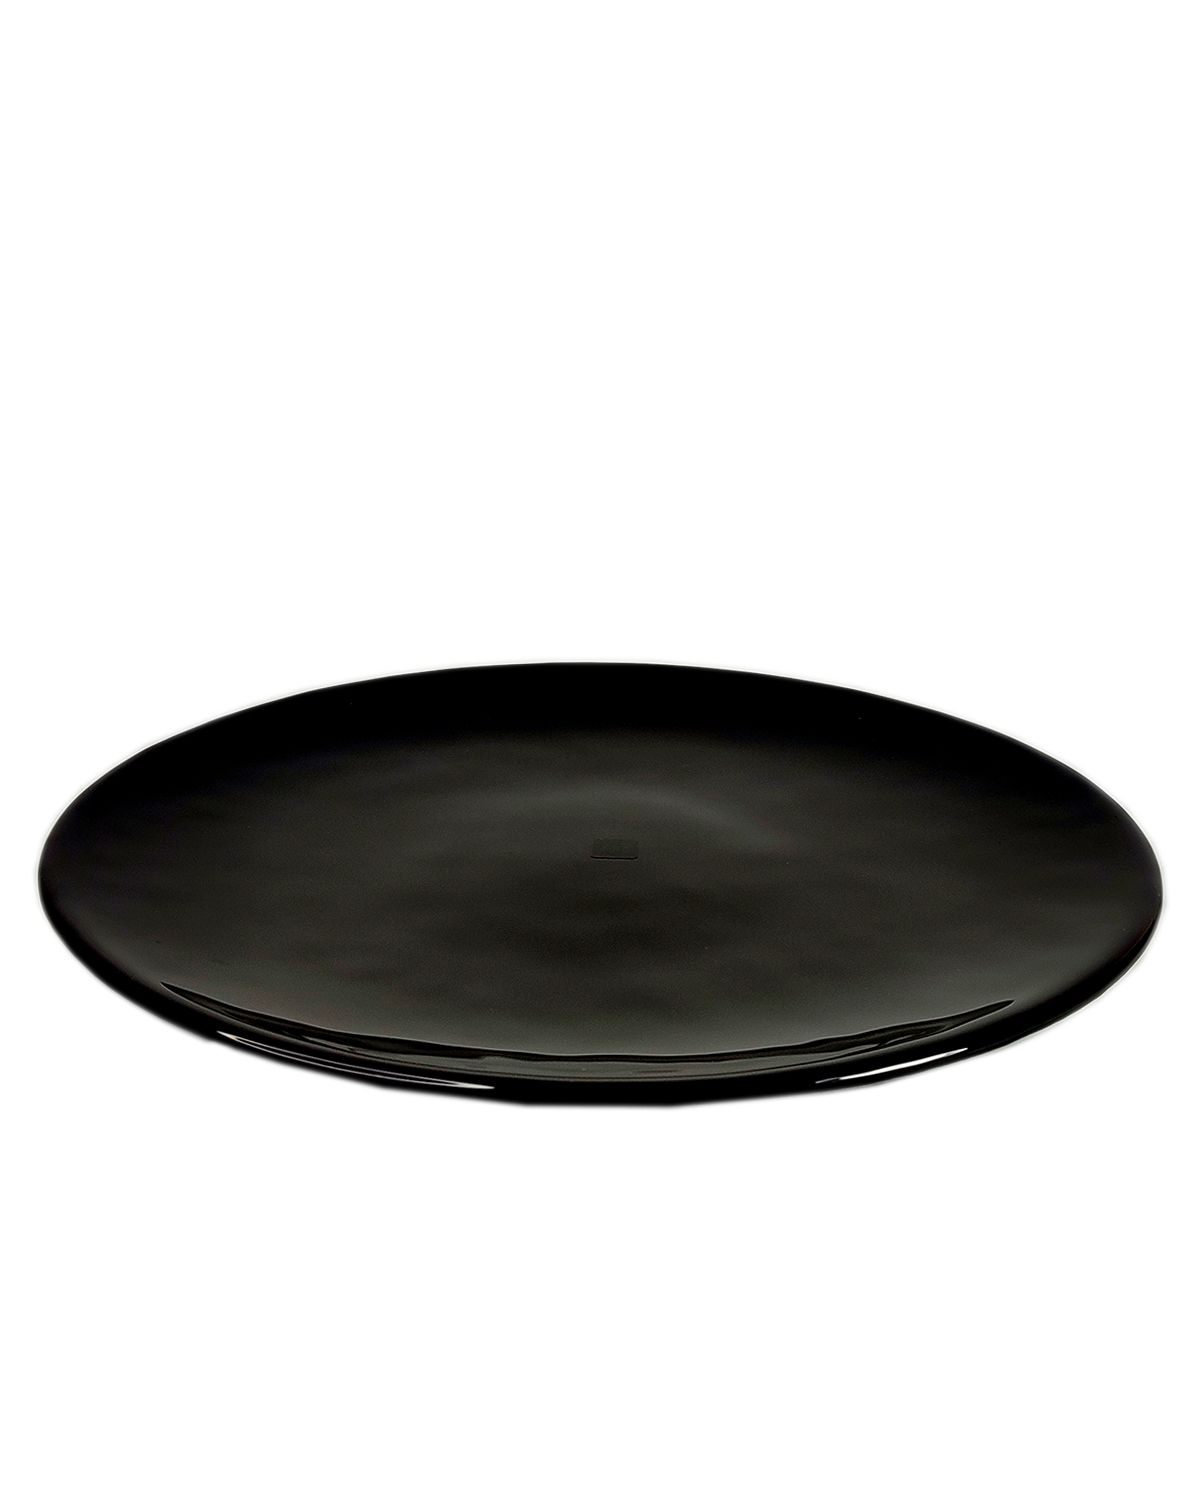 Тарелка черная большая Black Lux 32 см